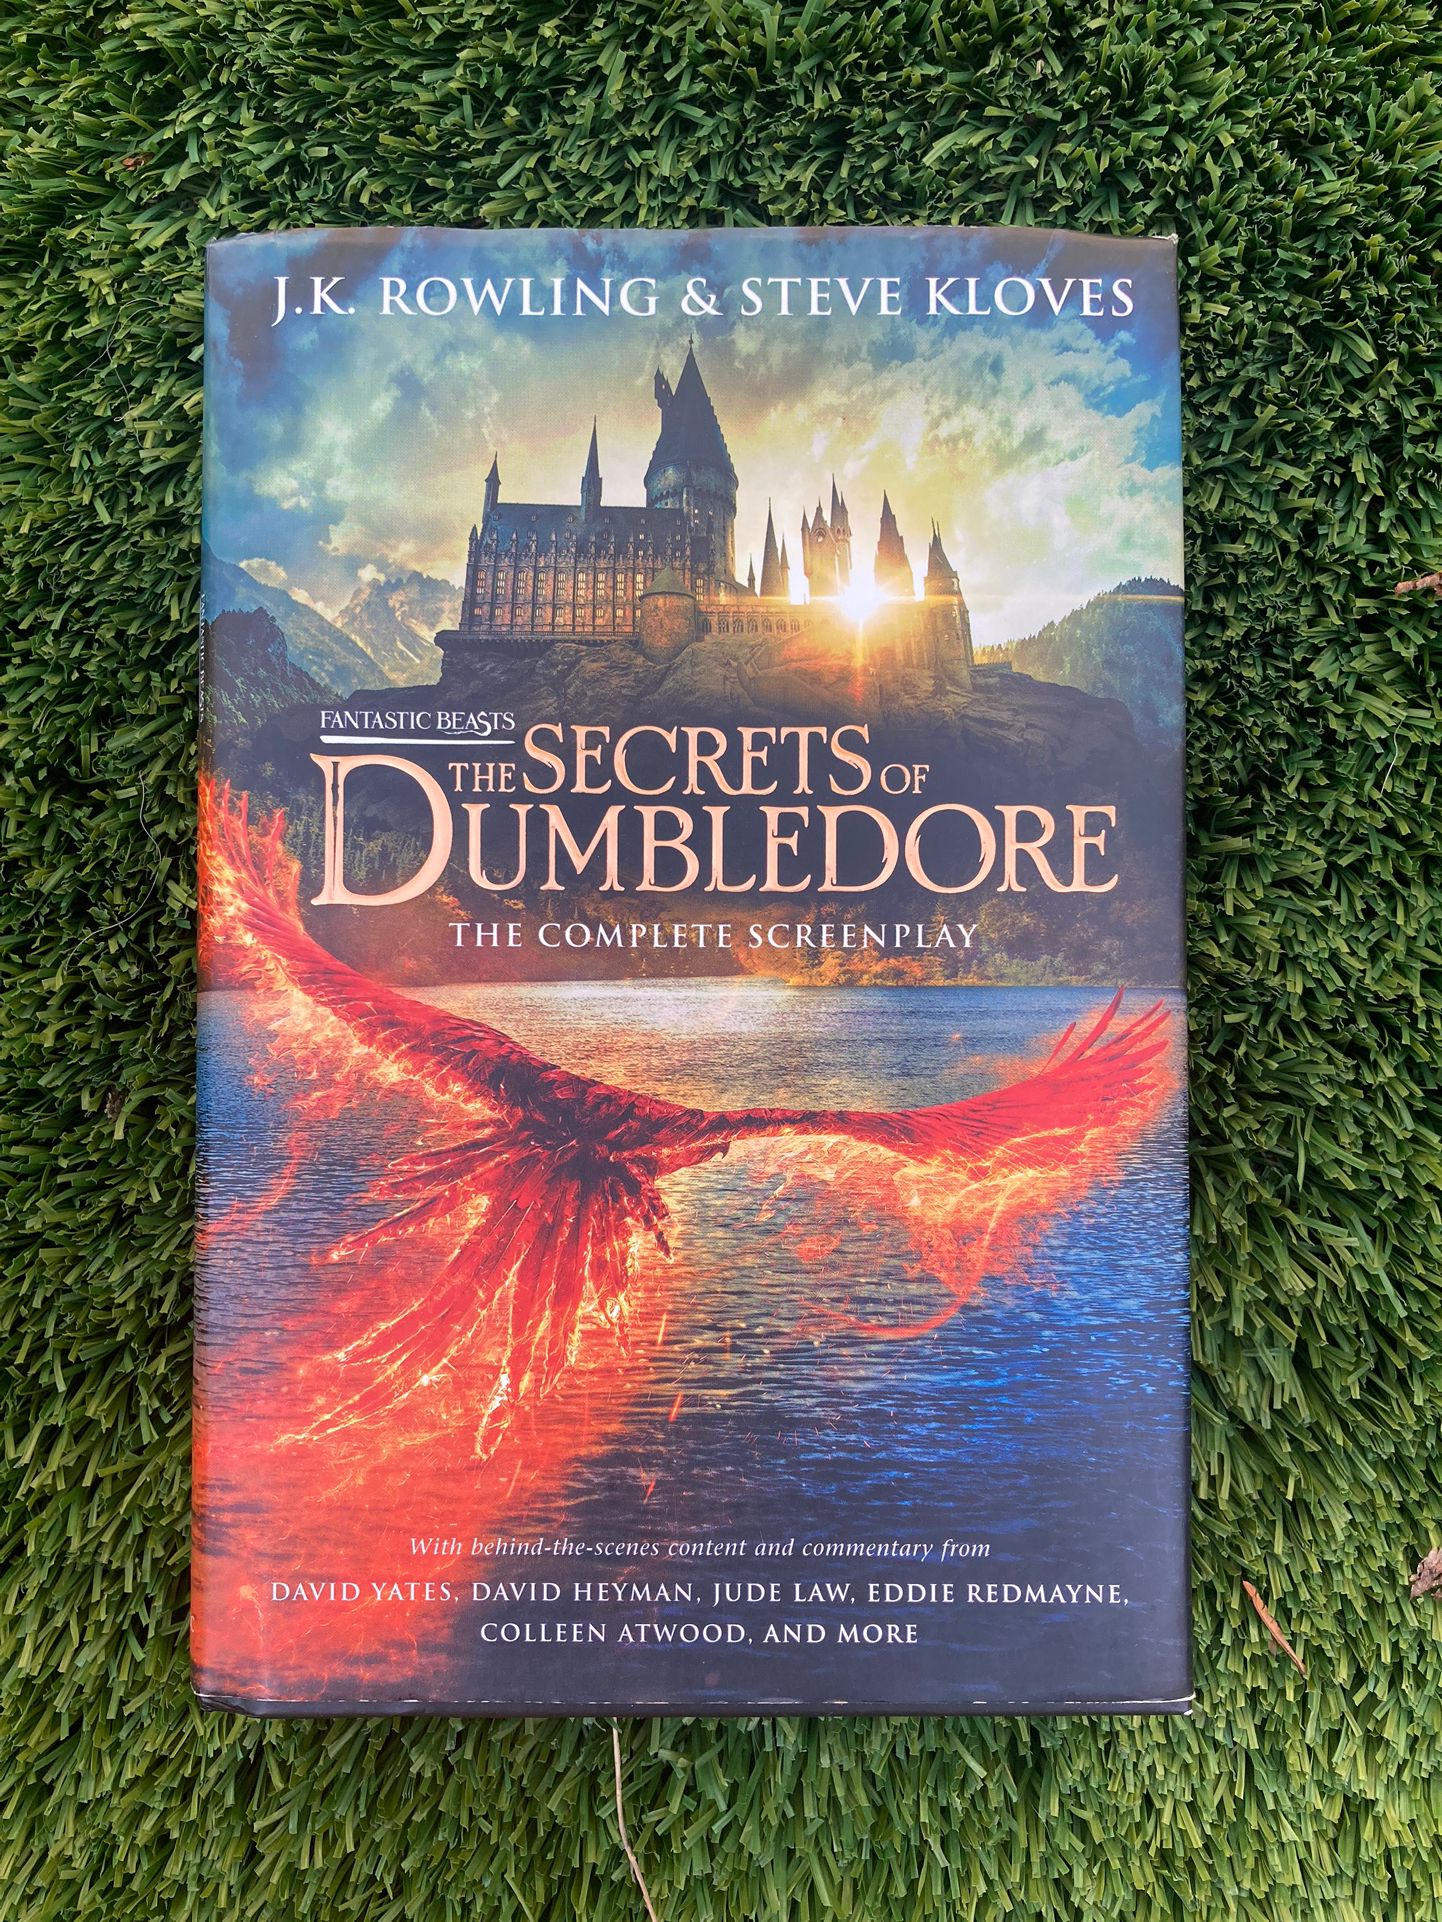 Fantastic Beast The Secrets of Dumbledore book